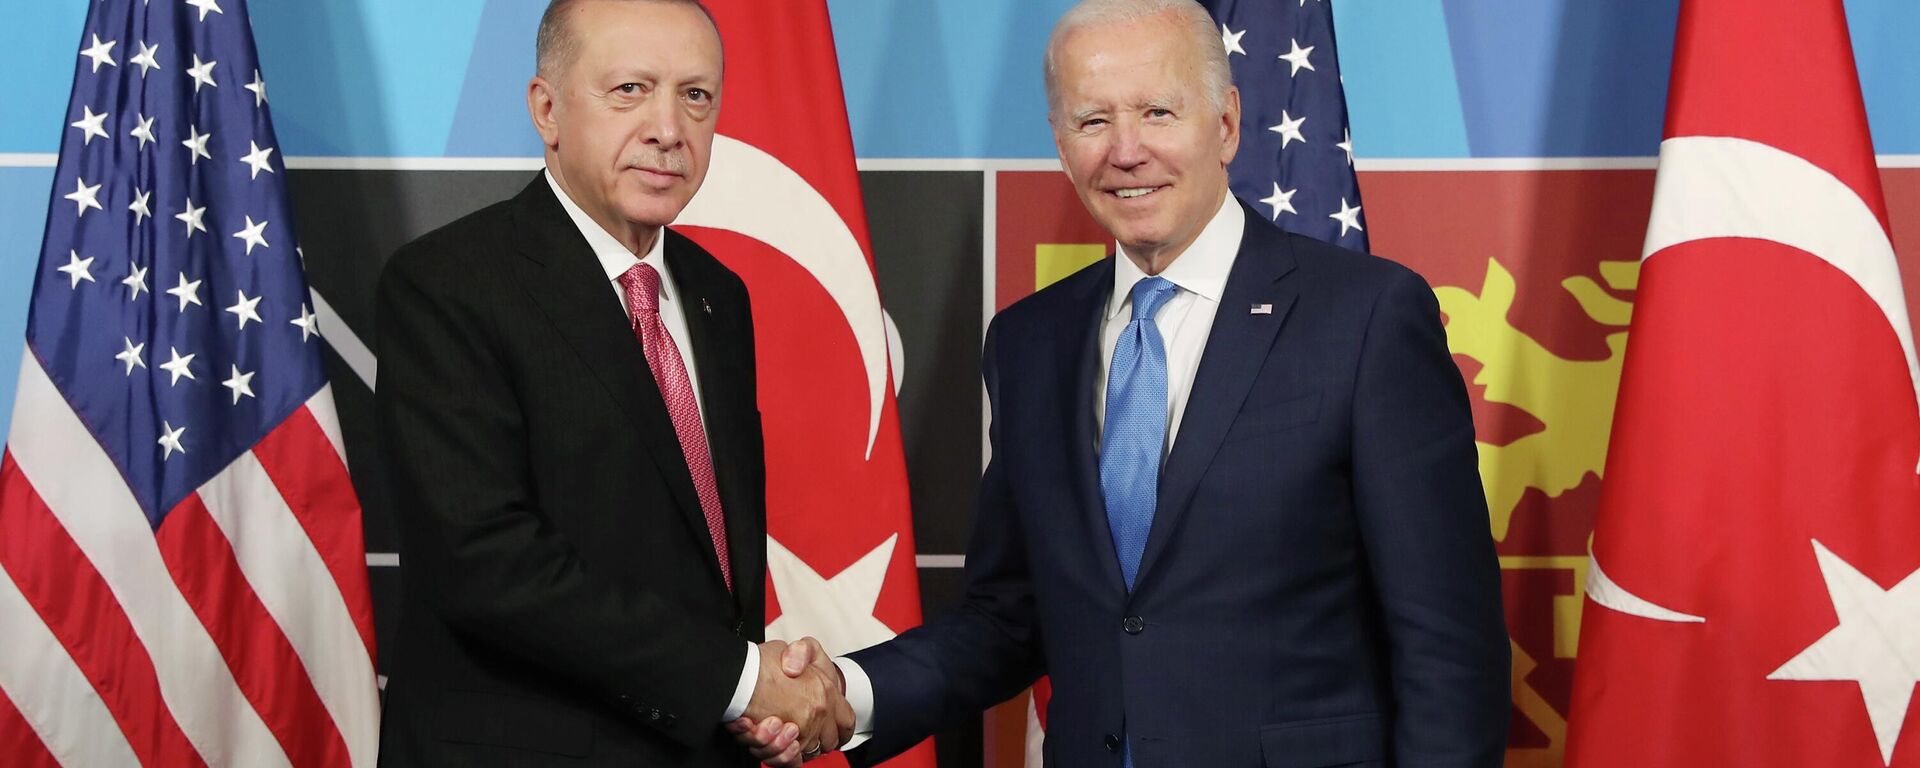 Cumhurbaşkanı Recep Tayyip Erdoğan, ABD Başkanı Joe Biden ile yapacağı görüşme öncesi yaptığı açıklamada, Ukrayna-Rusya Savaşı'nda Türkiye'nin denge politikası yürüttüğünü ifade etti. ABD Başkanı Joe Biden ise, Türkiye'nin Finlandiya ve İsveç'in NATO üyeliğine verdiği destek için Cumhurbaşkanı Erdoğan'a teşekkür etti. - Sputnik Türkiye, 1920, 14.12.2023